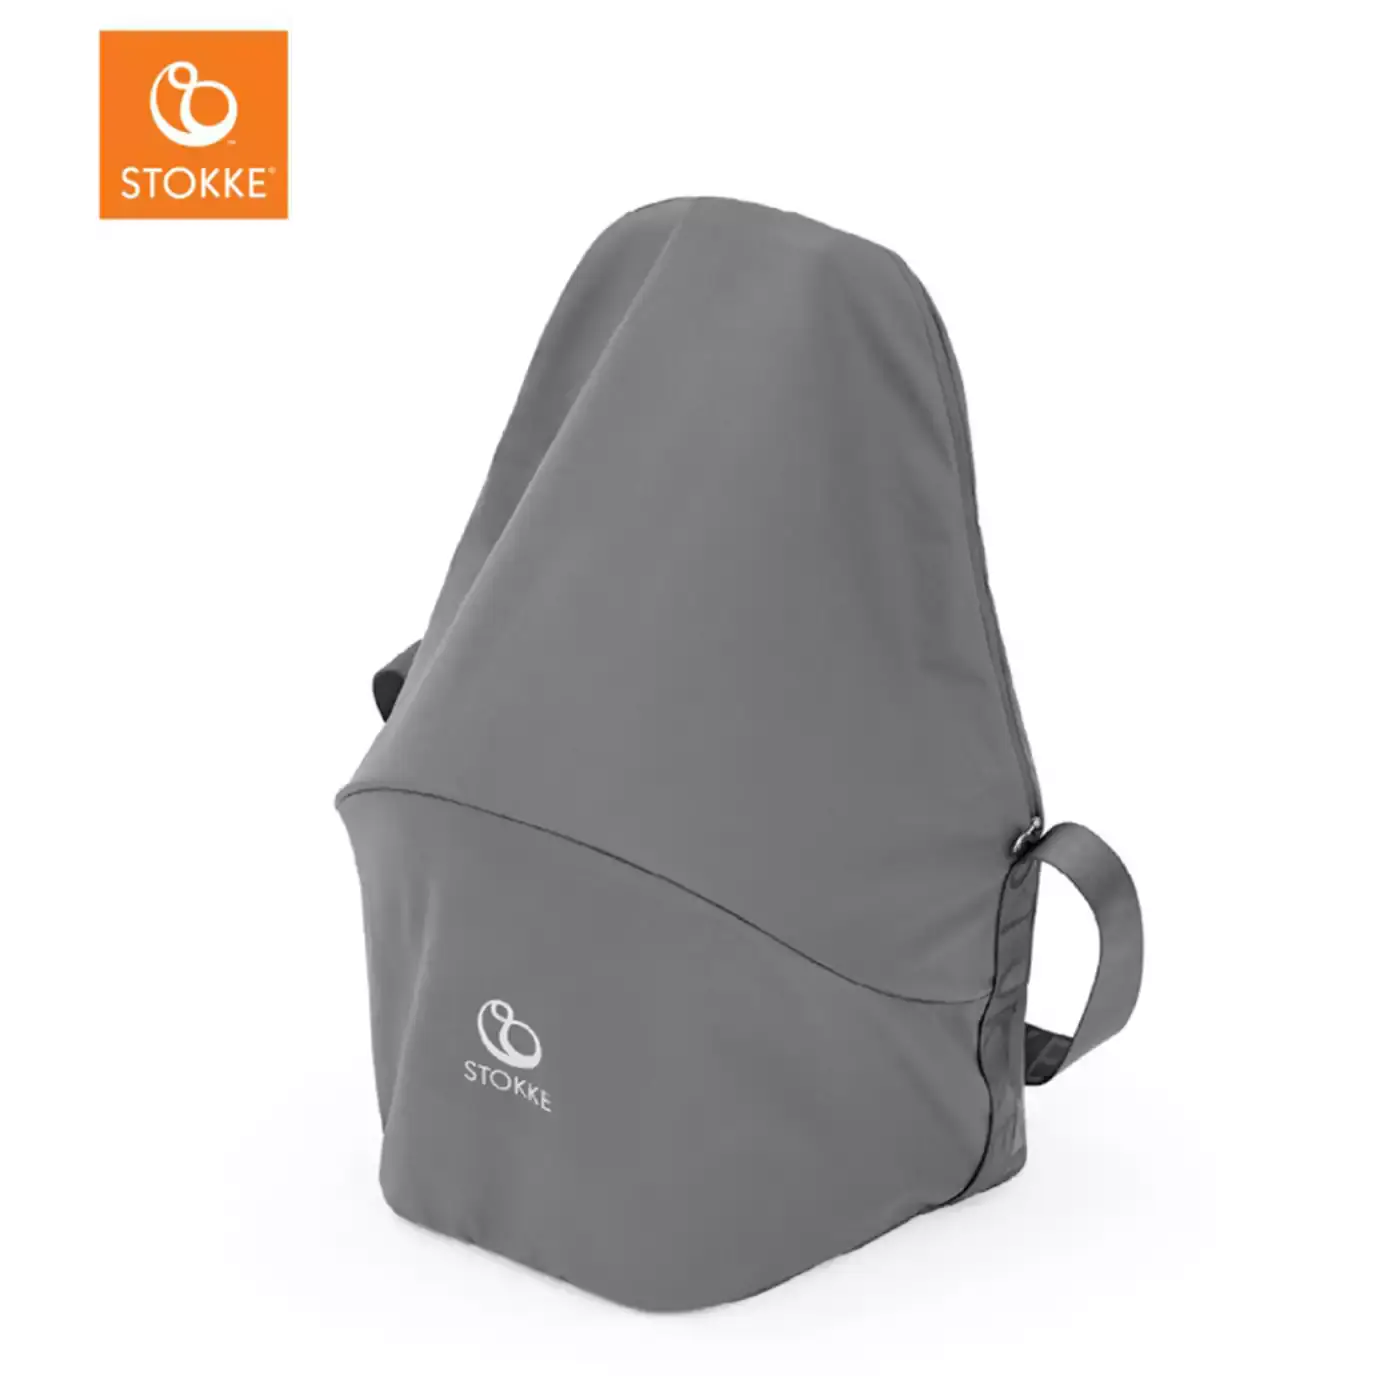 Clikk™ Travel Bag STOKKE Grau 2000579466809 7